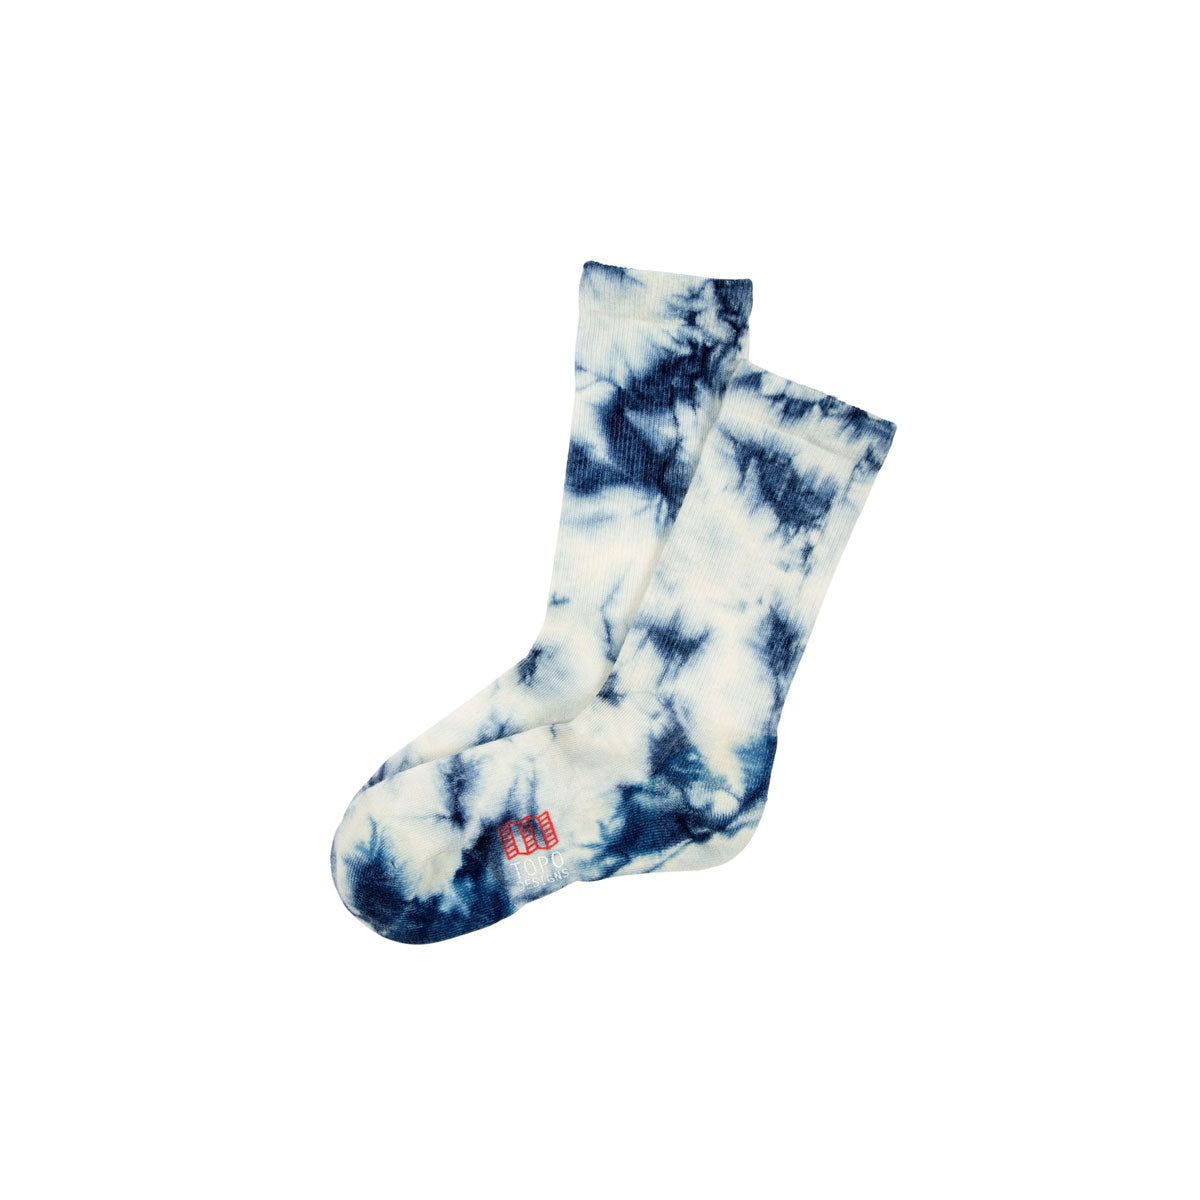 Topo Designs : Town Socks : Blue/White Tie Dye